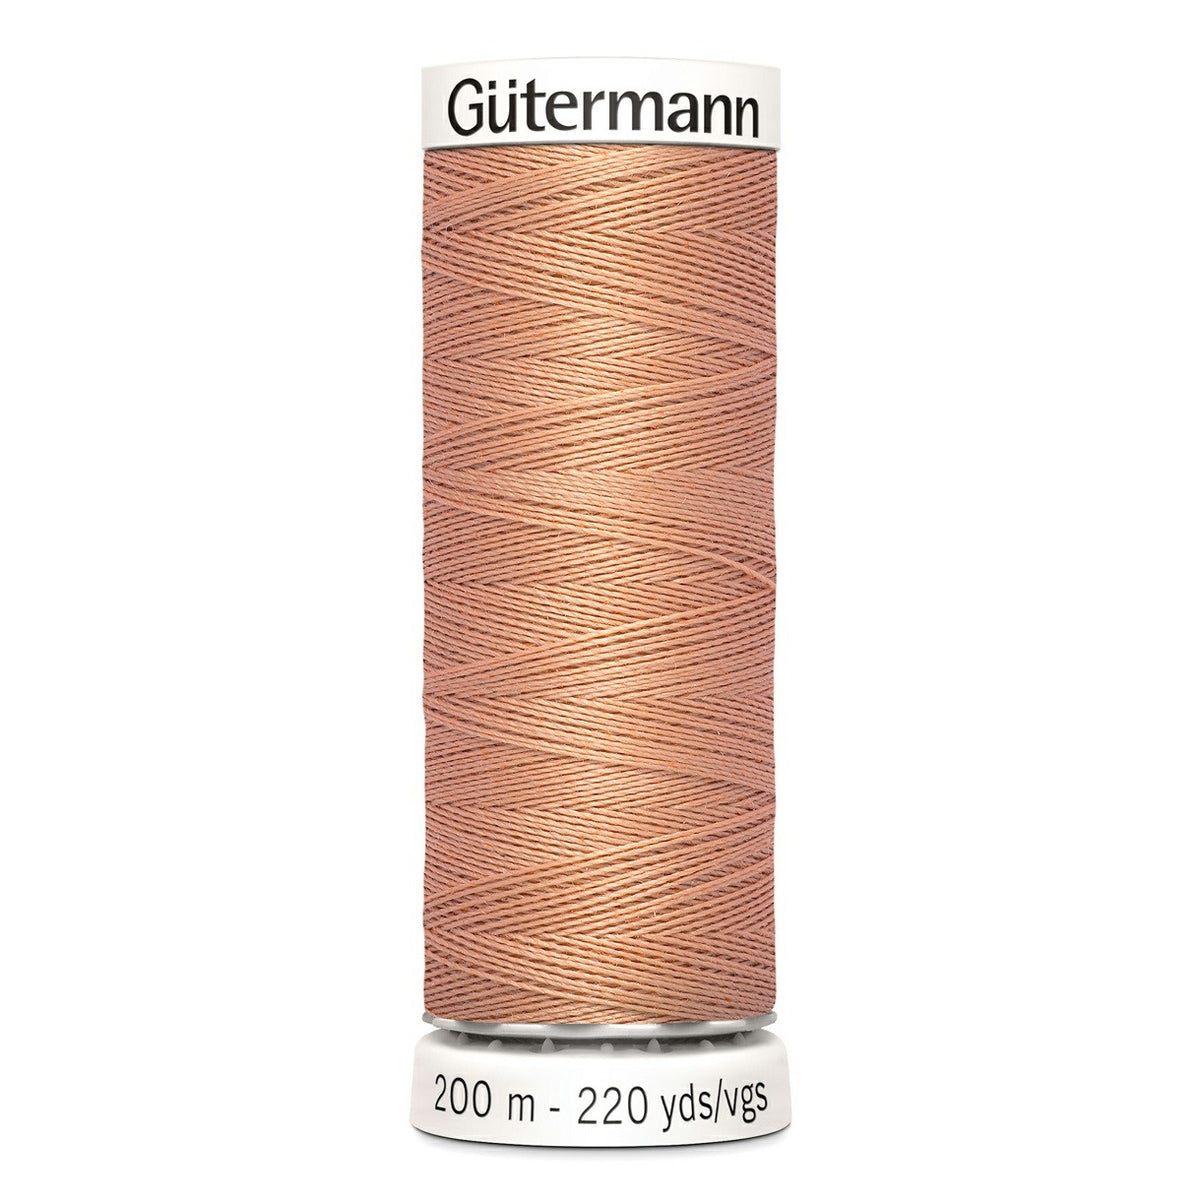 Fil Gütermann 100% polyester, 200 m couleur Argile, numéro 938